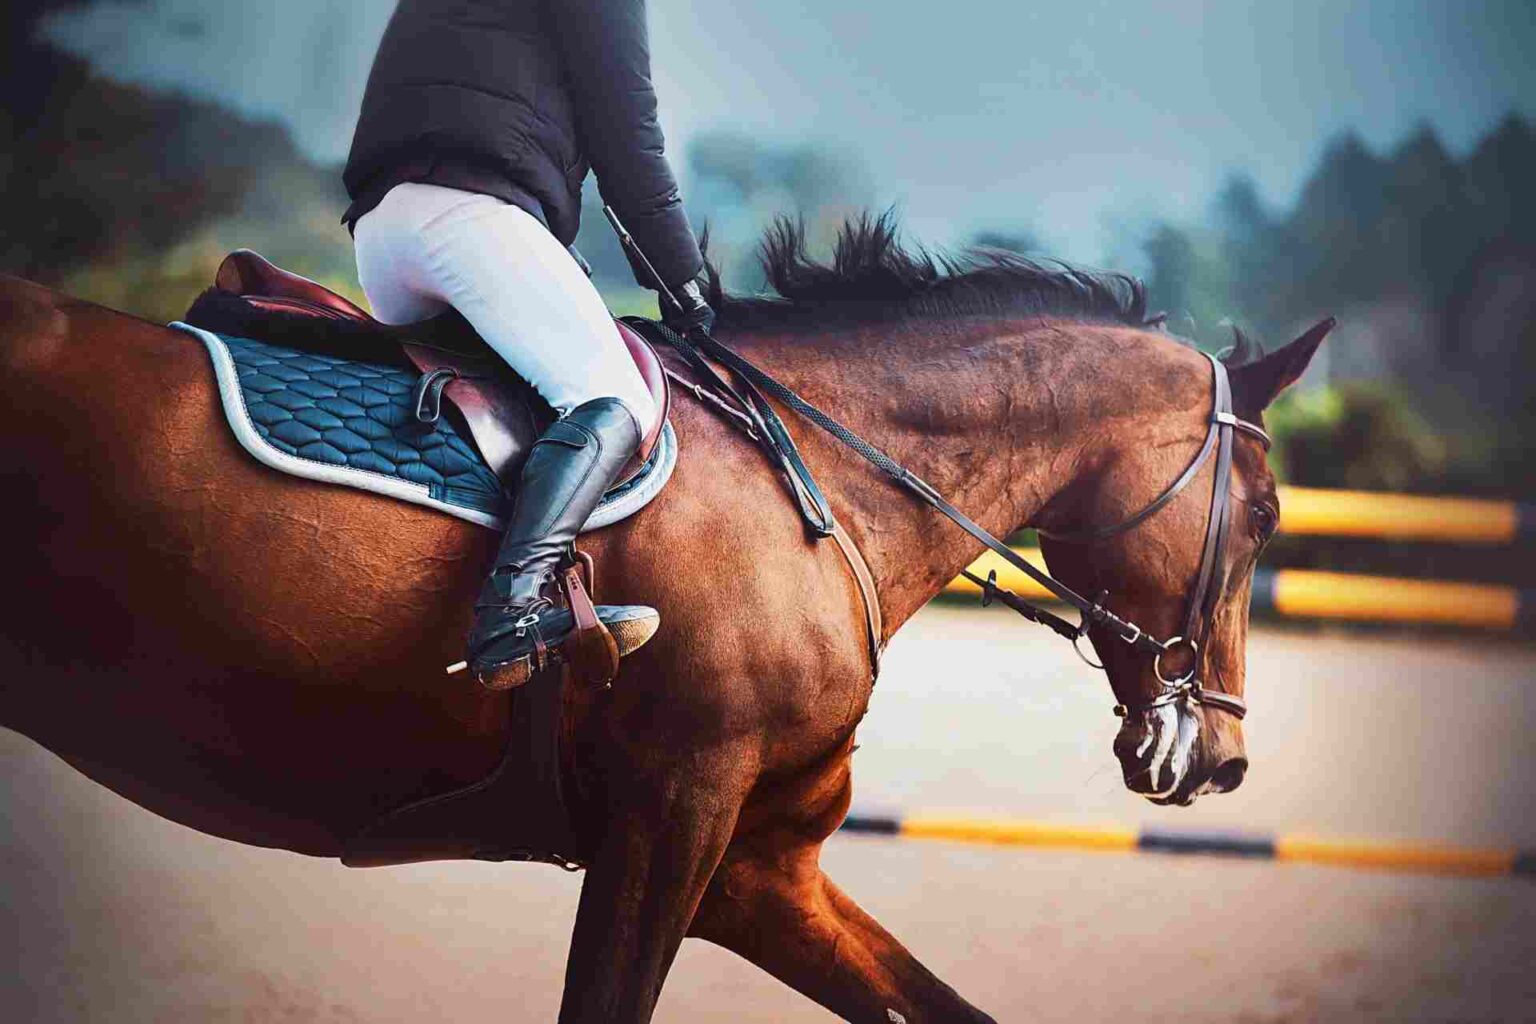 Alterazioni delle funzioni immunitarie dovute allo stress da corsa nei cavalli purosangue